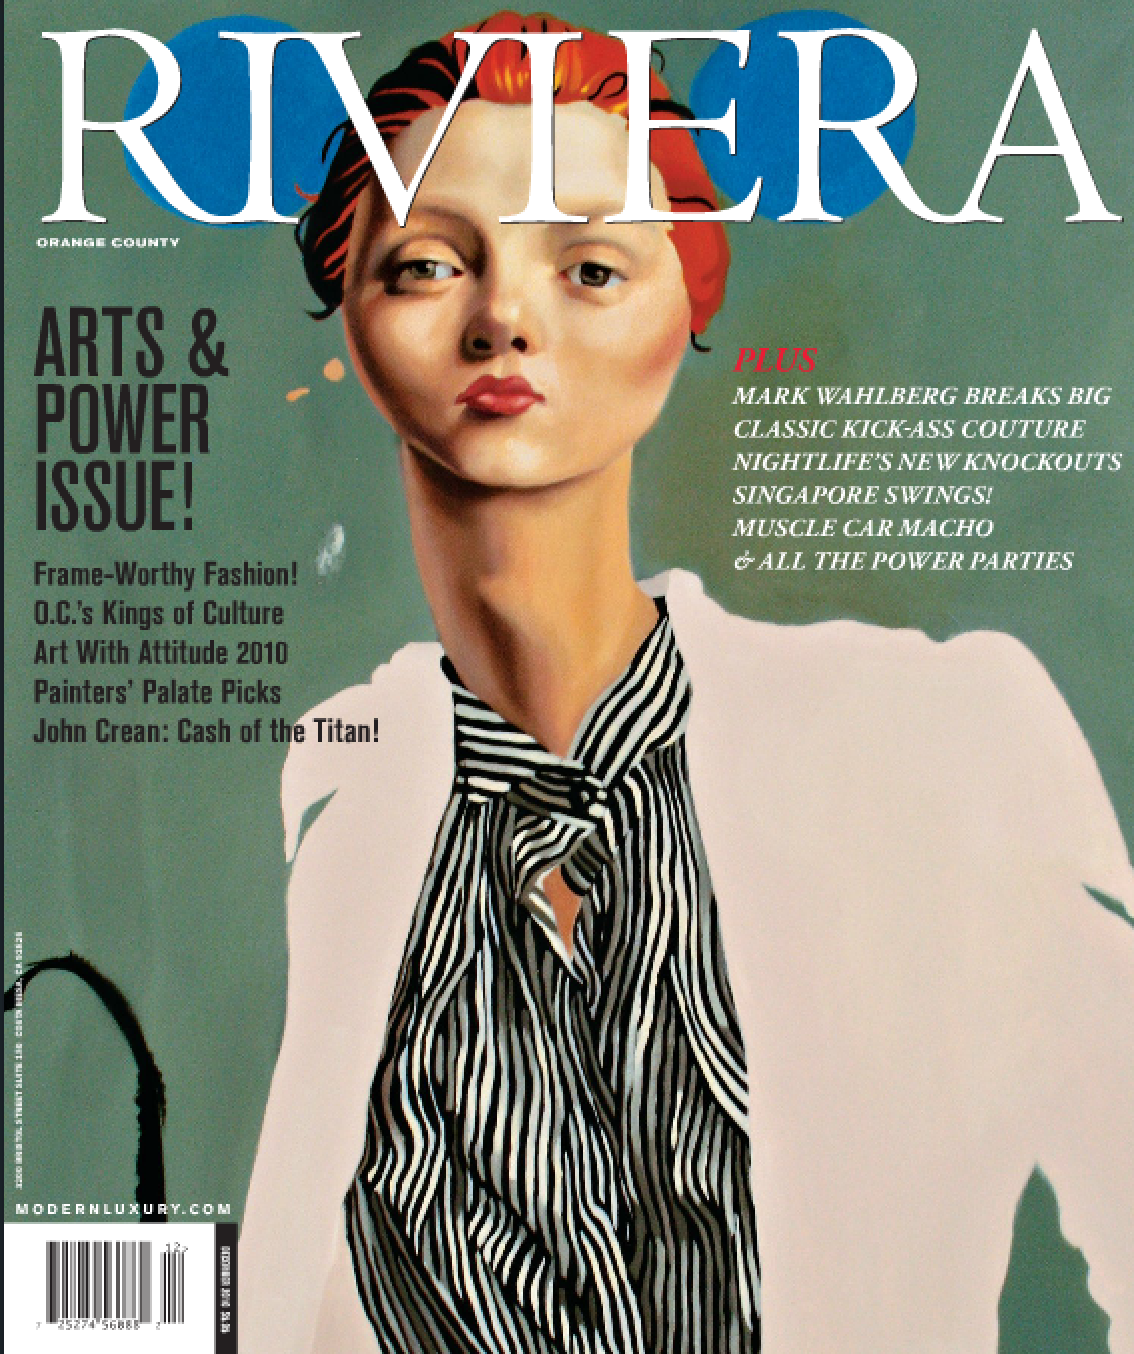 Aaron R. Thomas in Riviera magazine Dec 2010